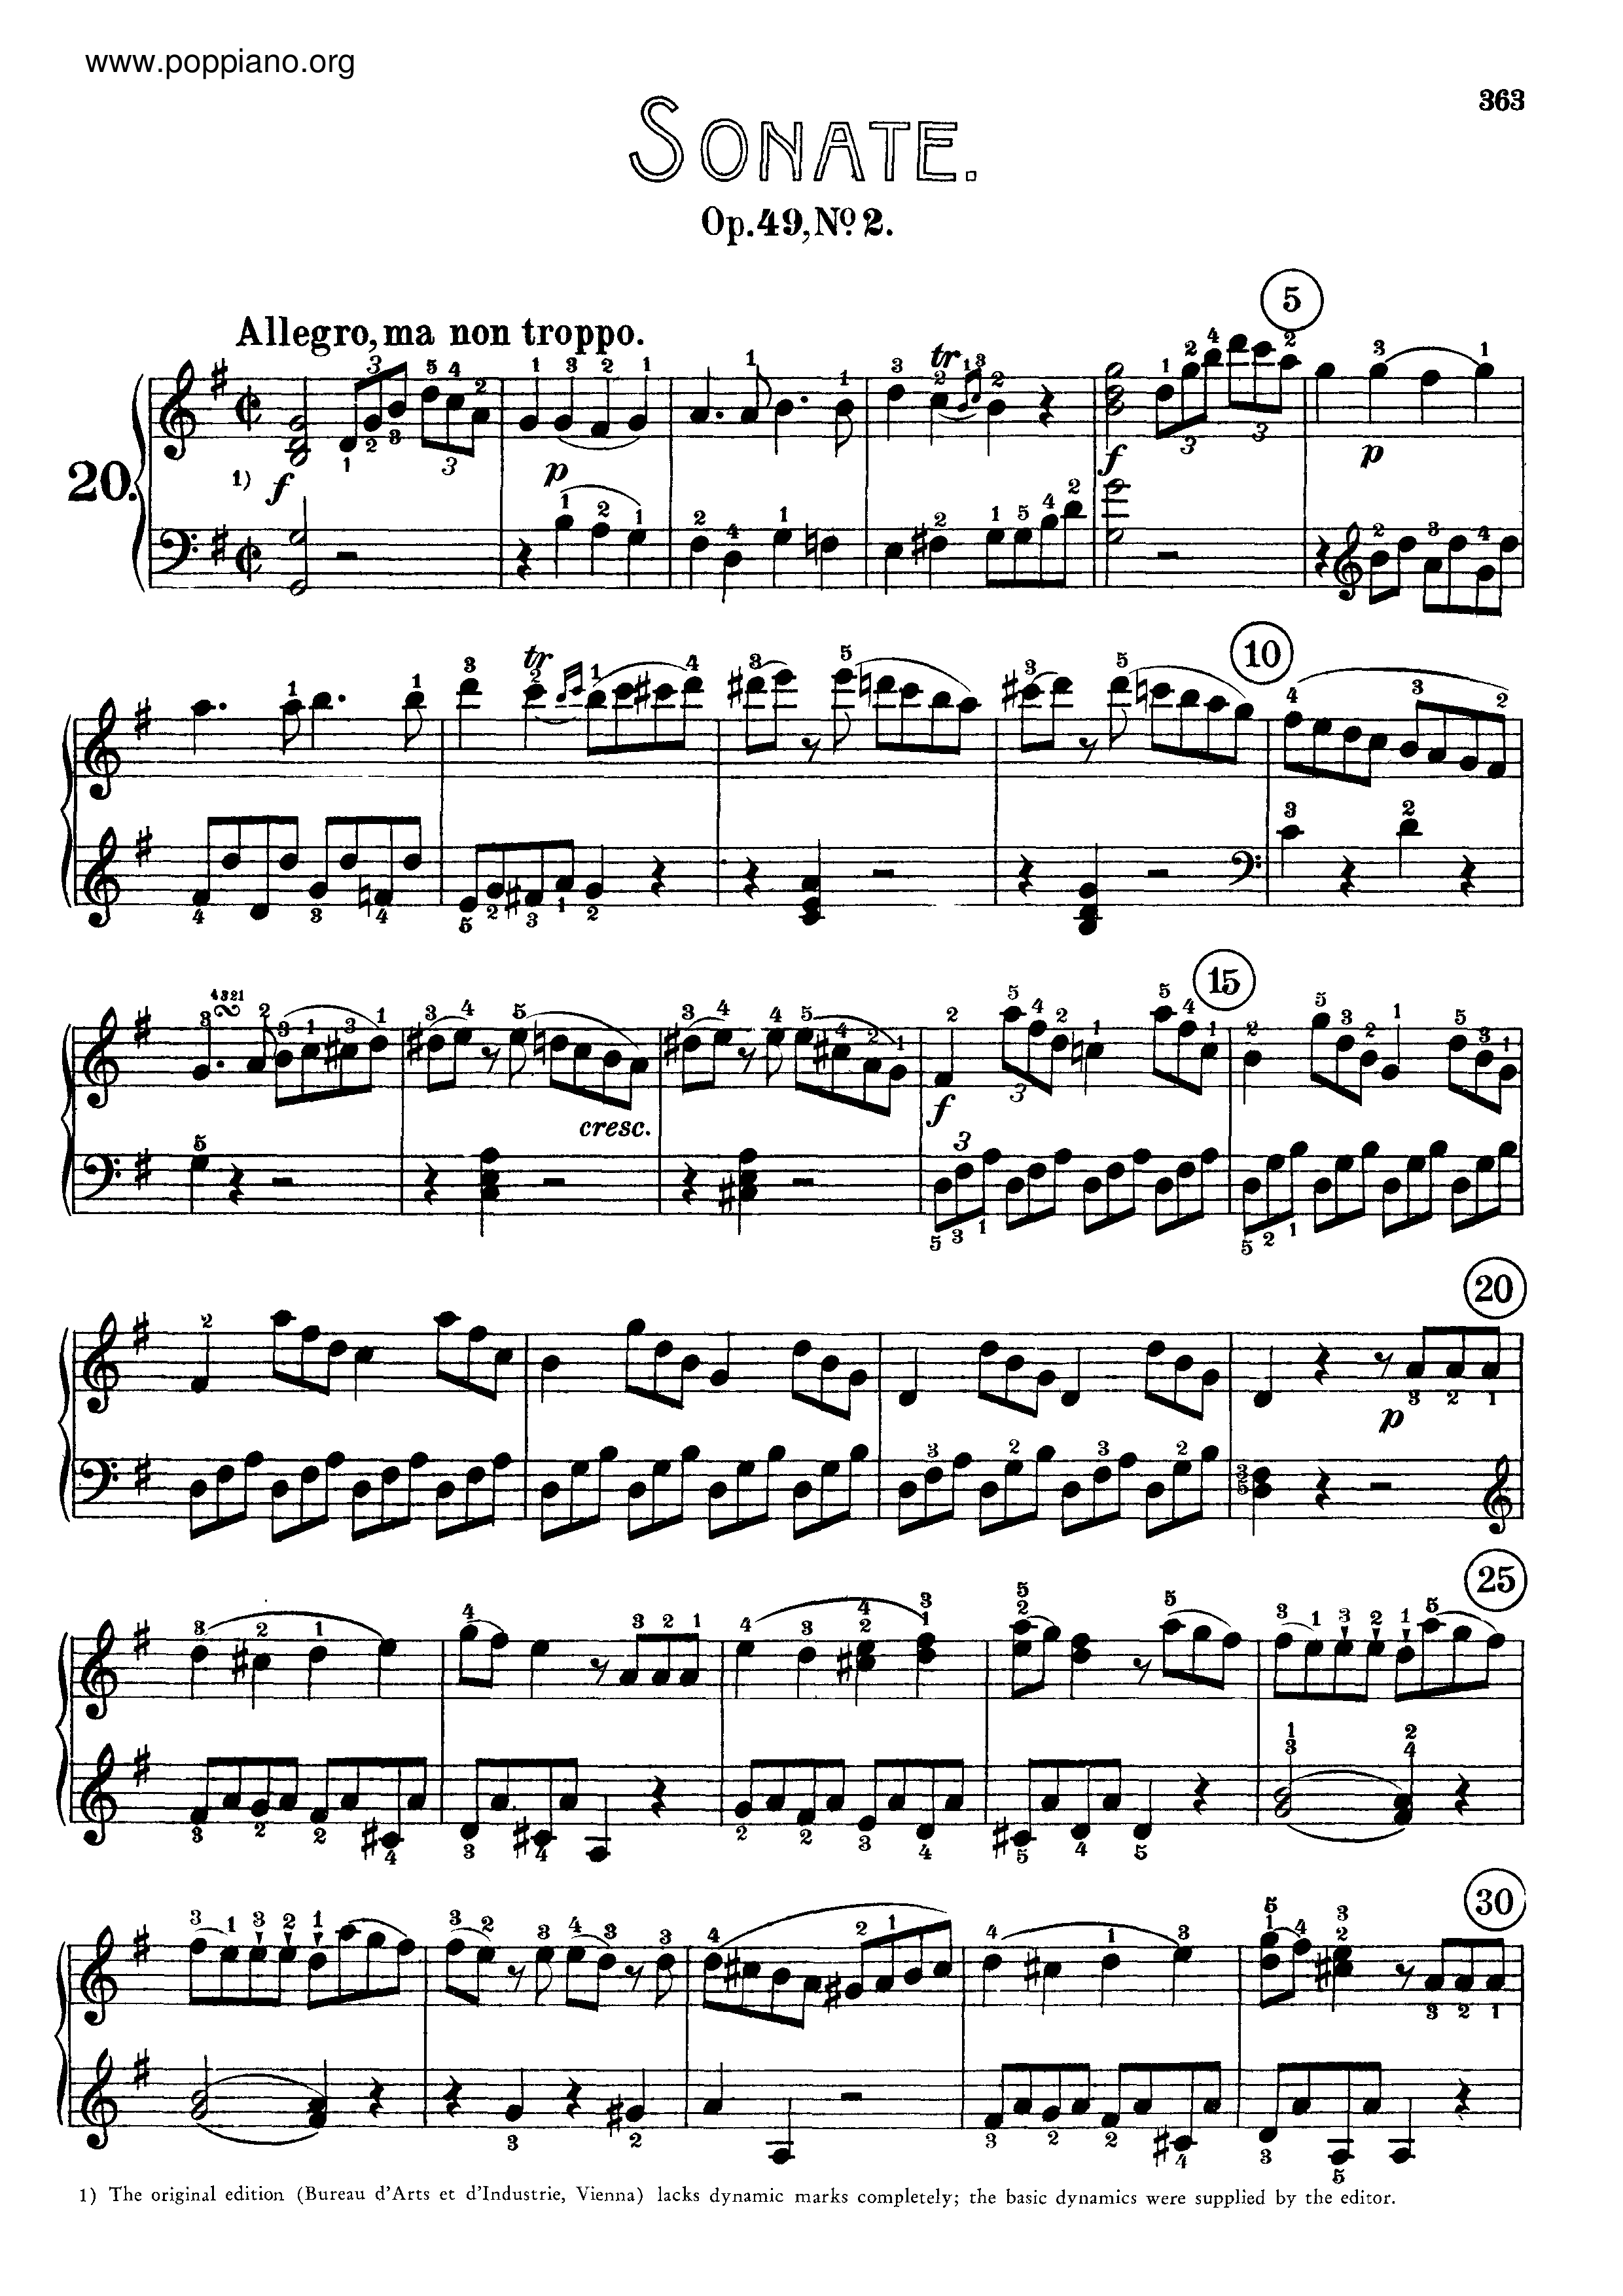 Sonata No. 20 in G major琴譜